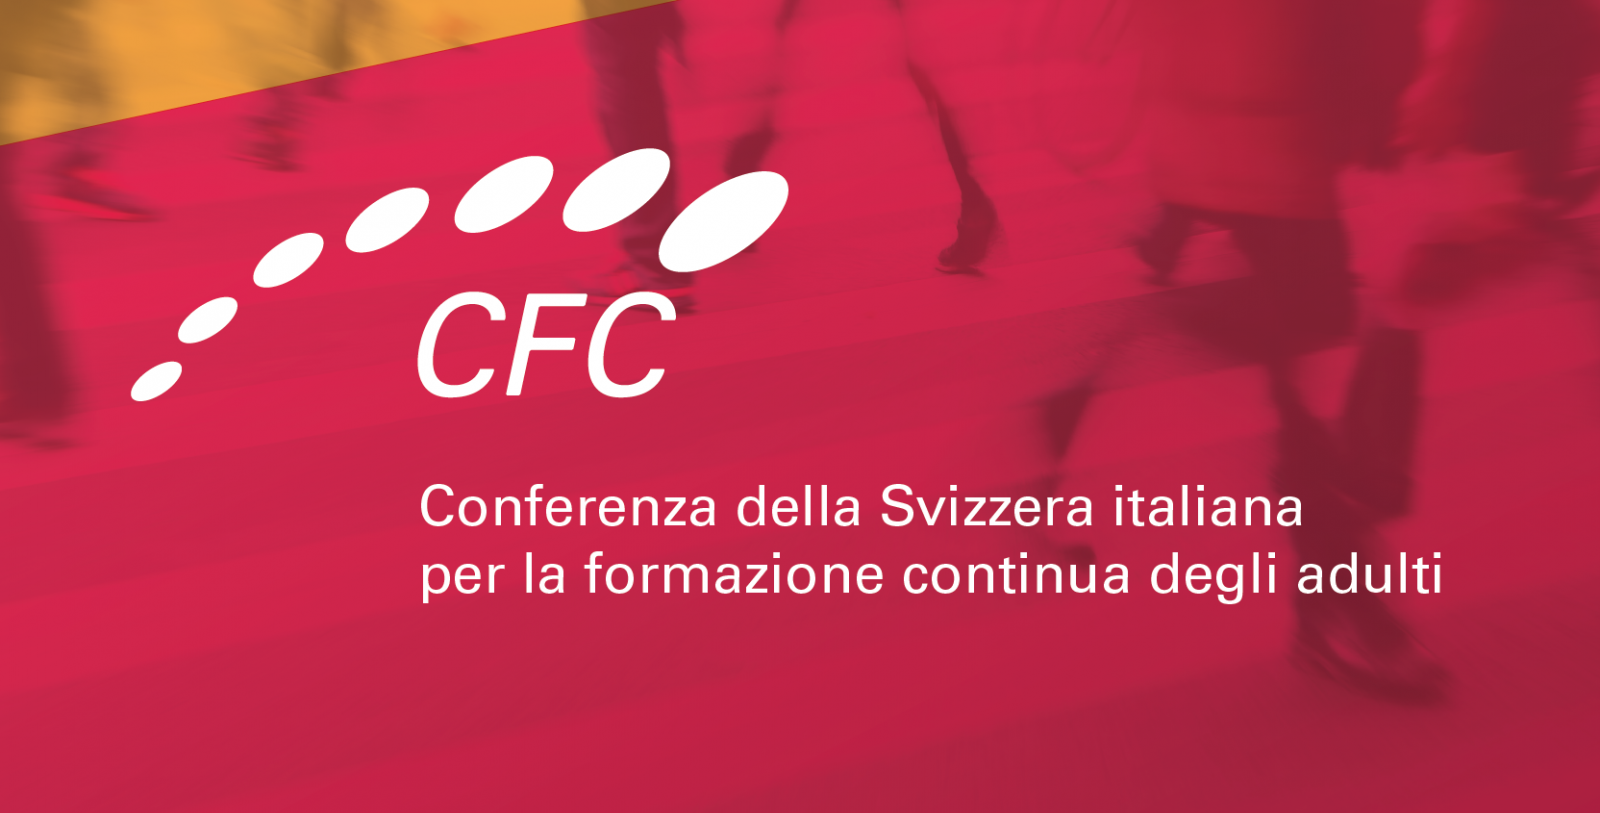 Conferenza della Svizzera italiana per la formazione continua degli adulti CFC